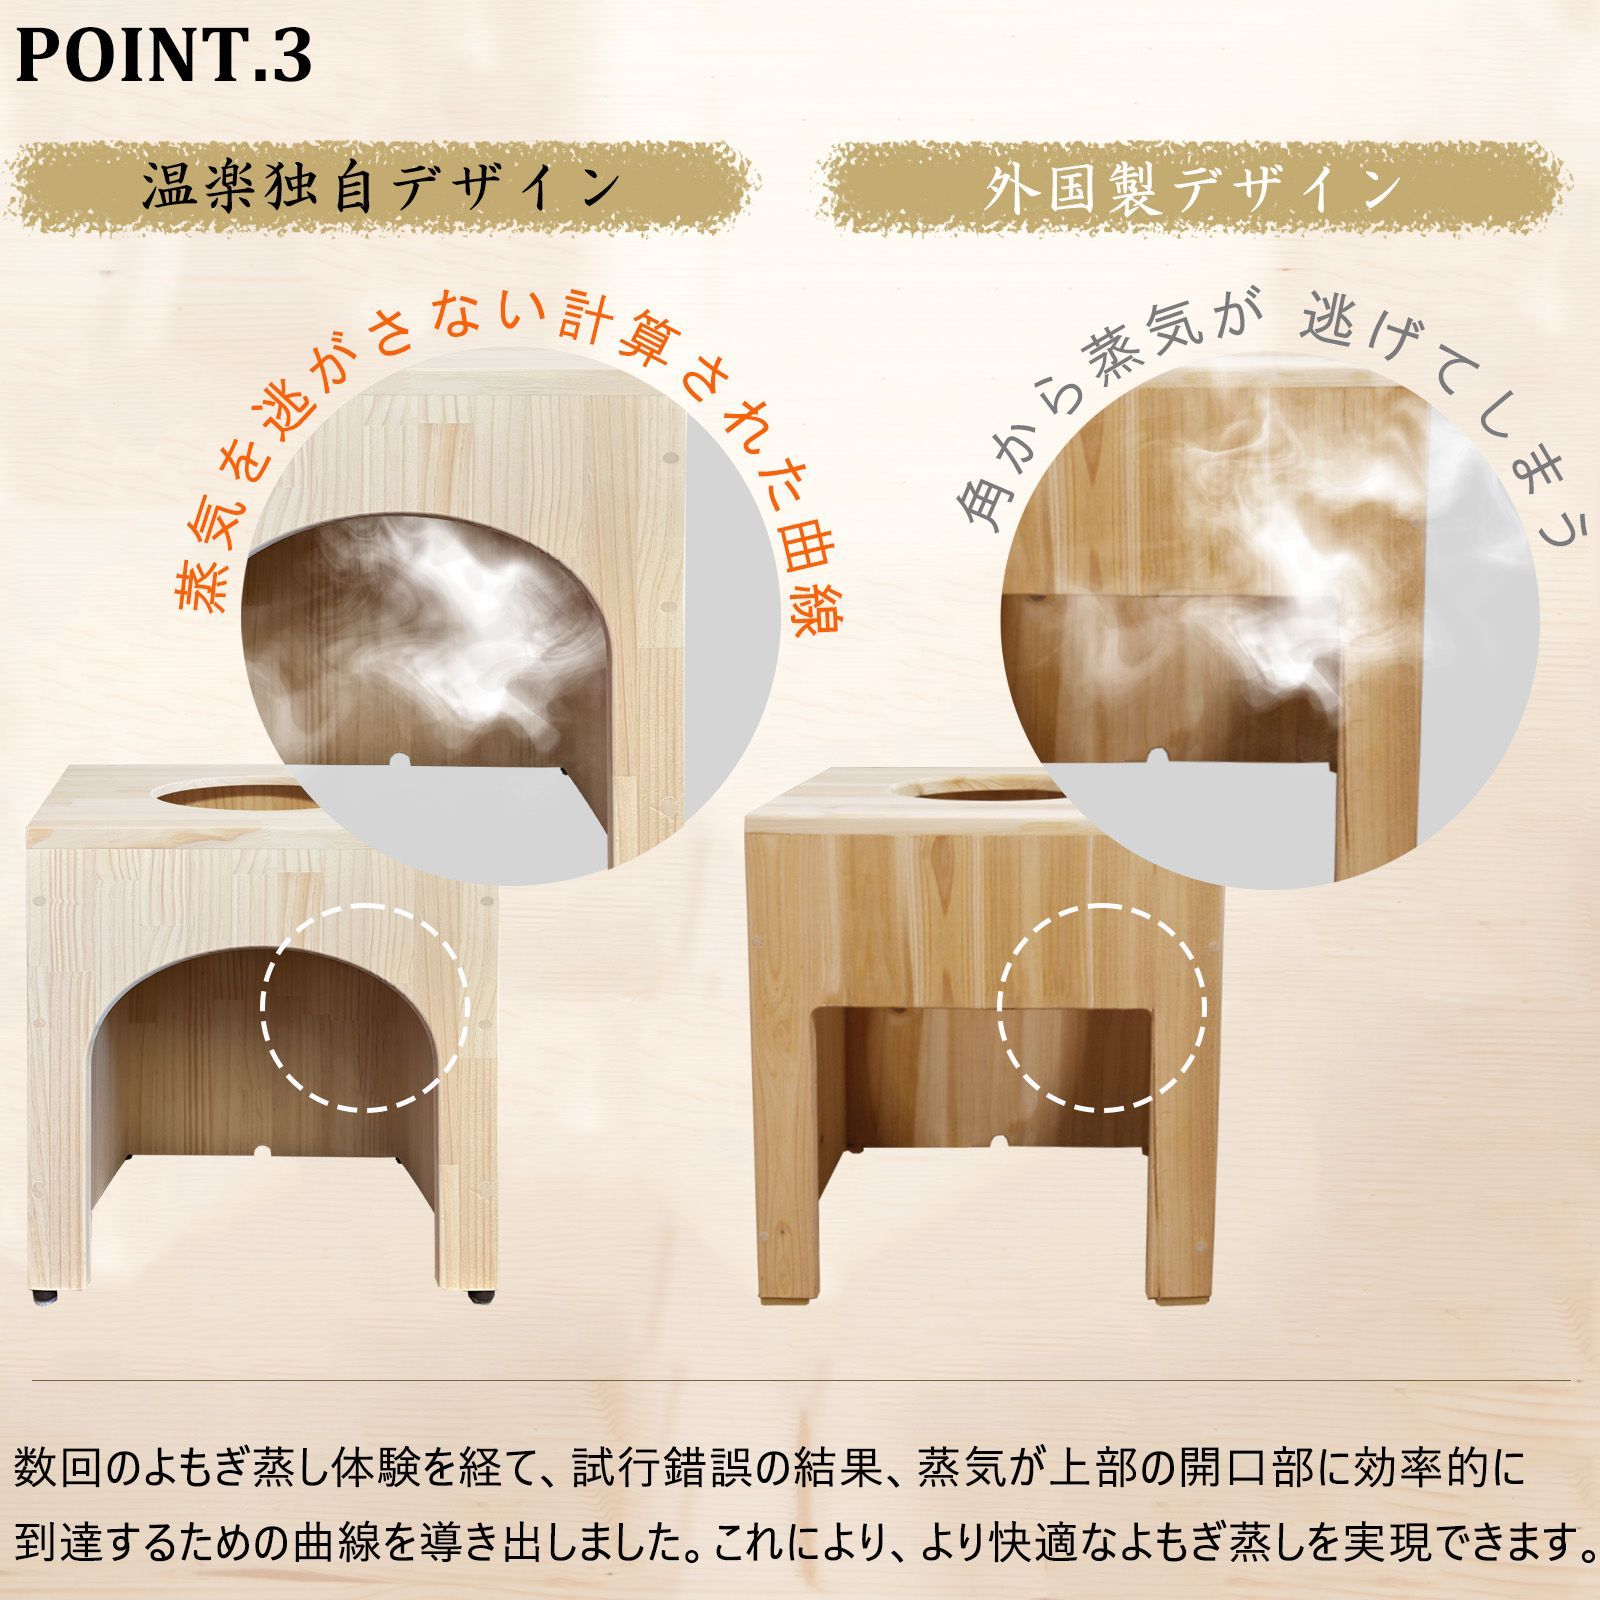 オーダーメイドした座浴器。日本の家具職人が手作りしたよもぎ蒸し座浴